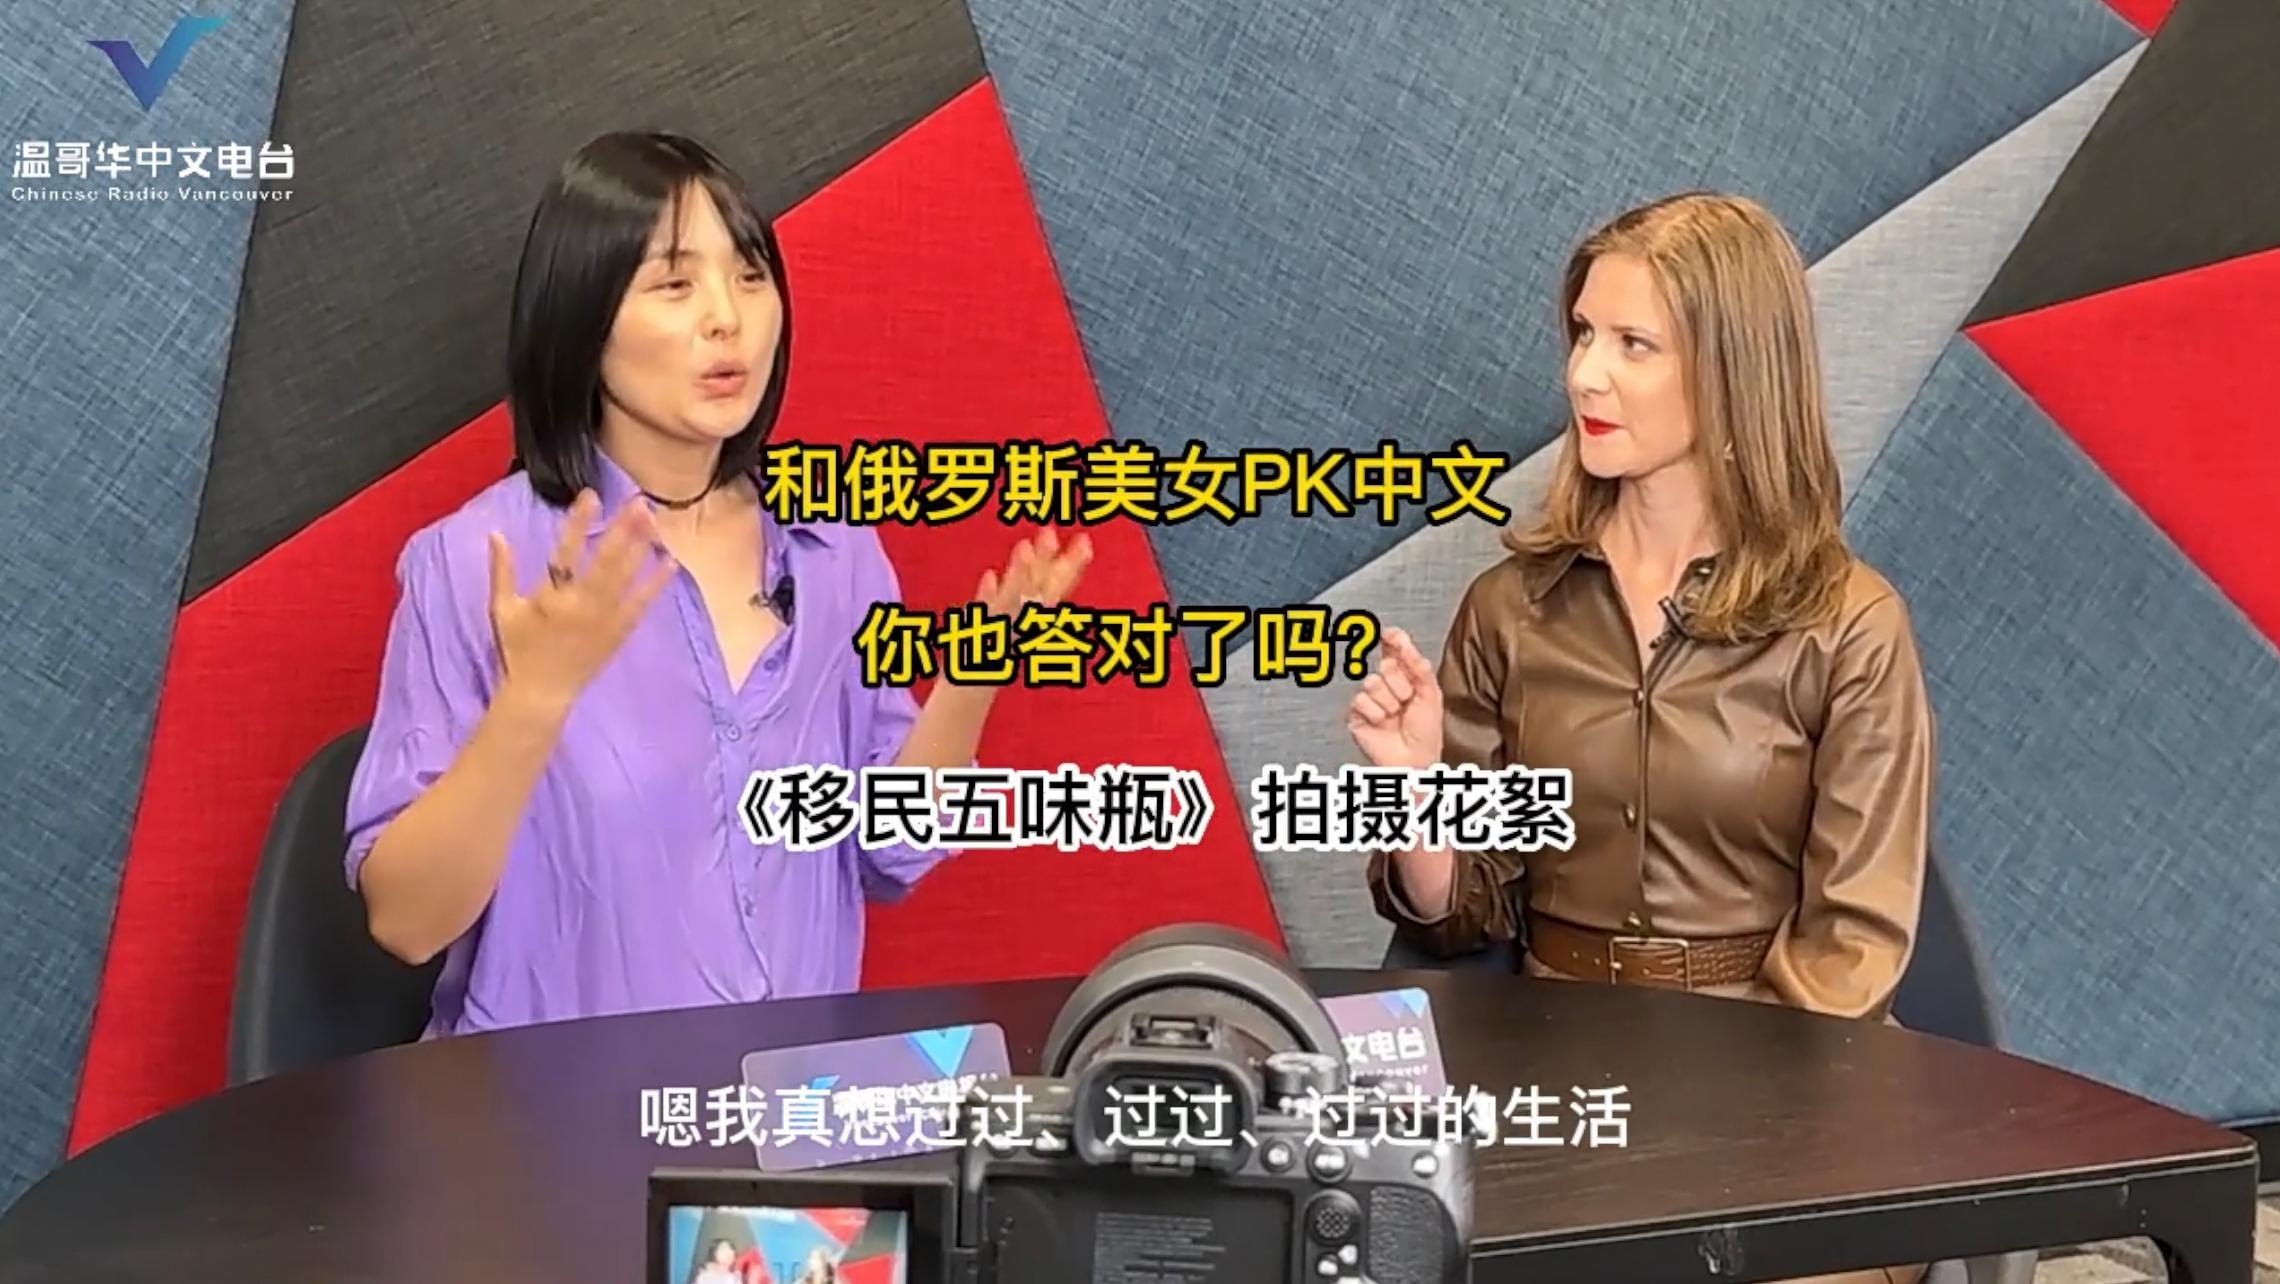 和会说五门外语的俄罗斯美女PK汉语问题，你也答对了吗？